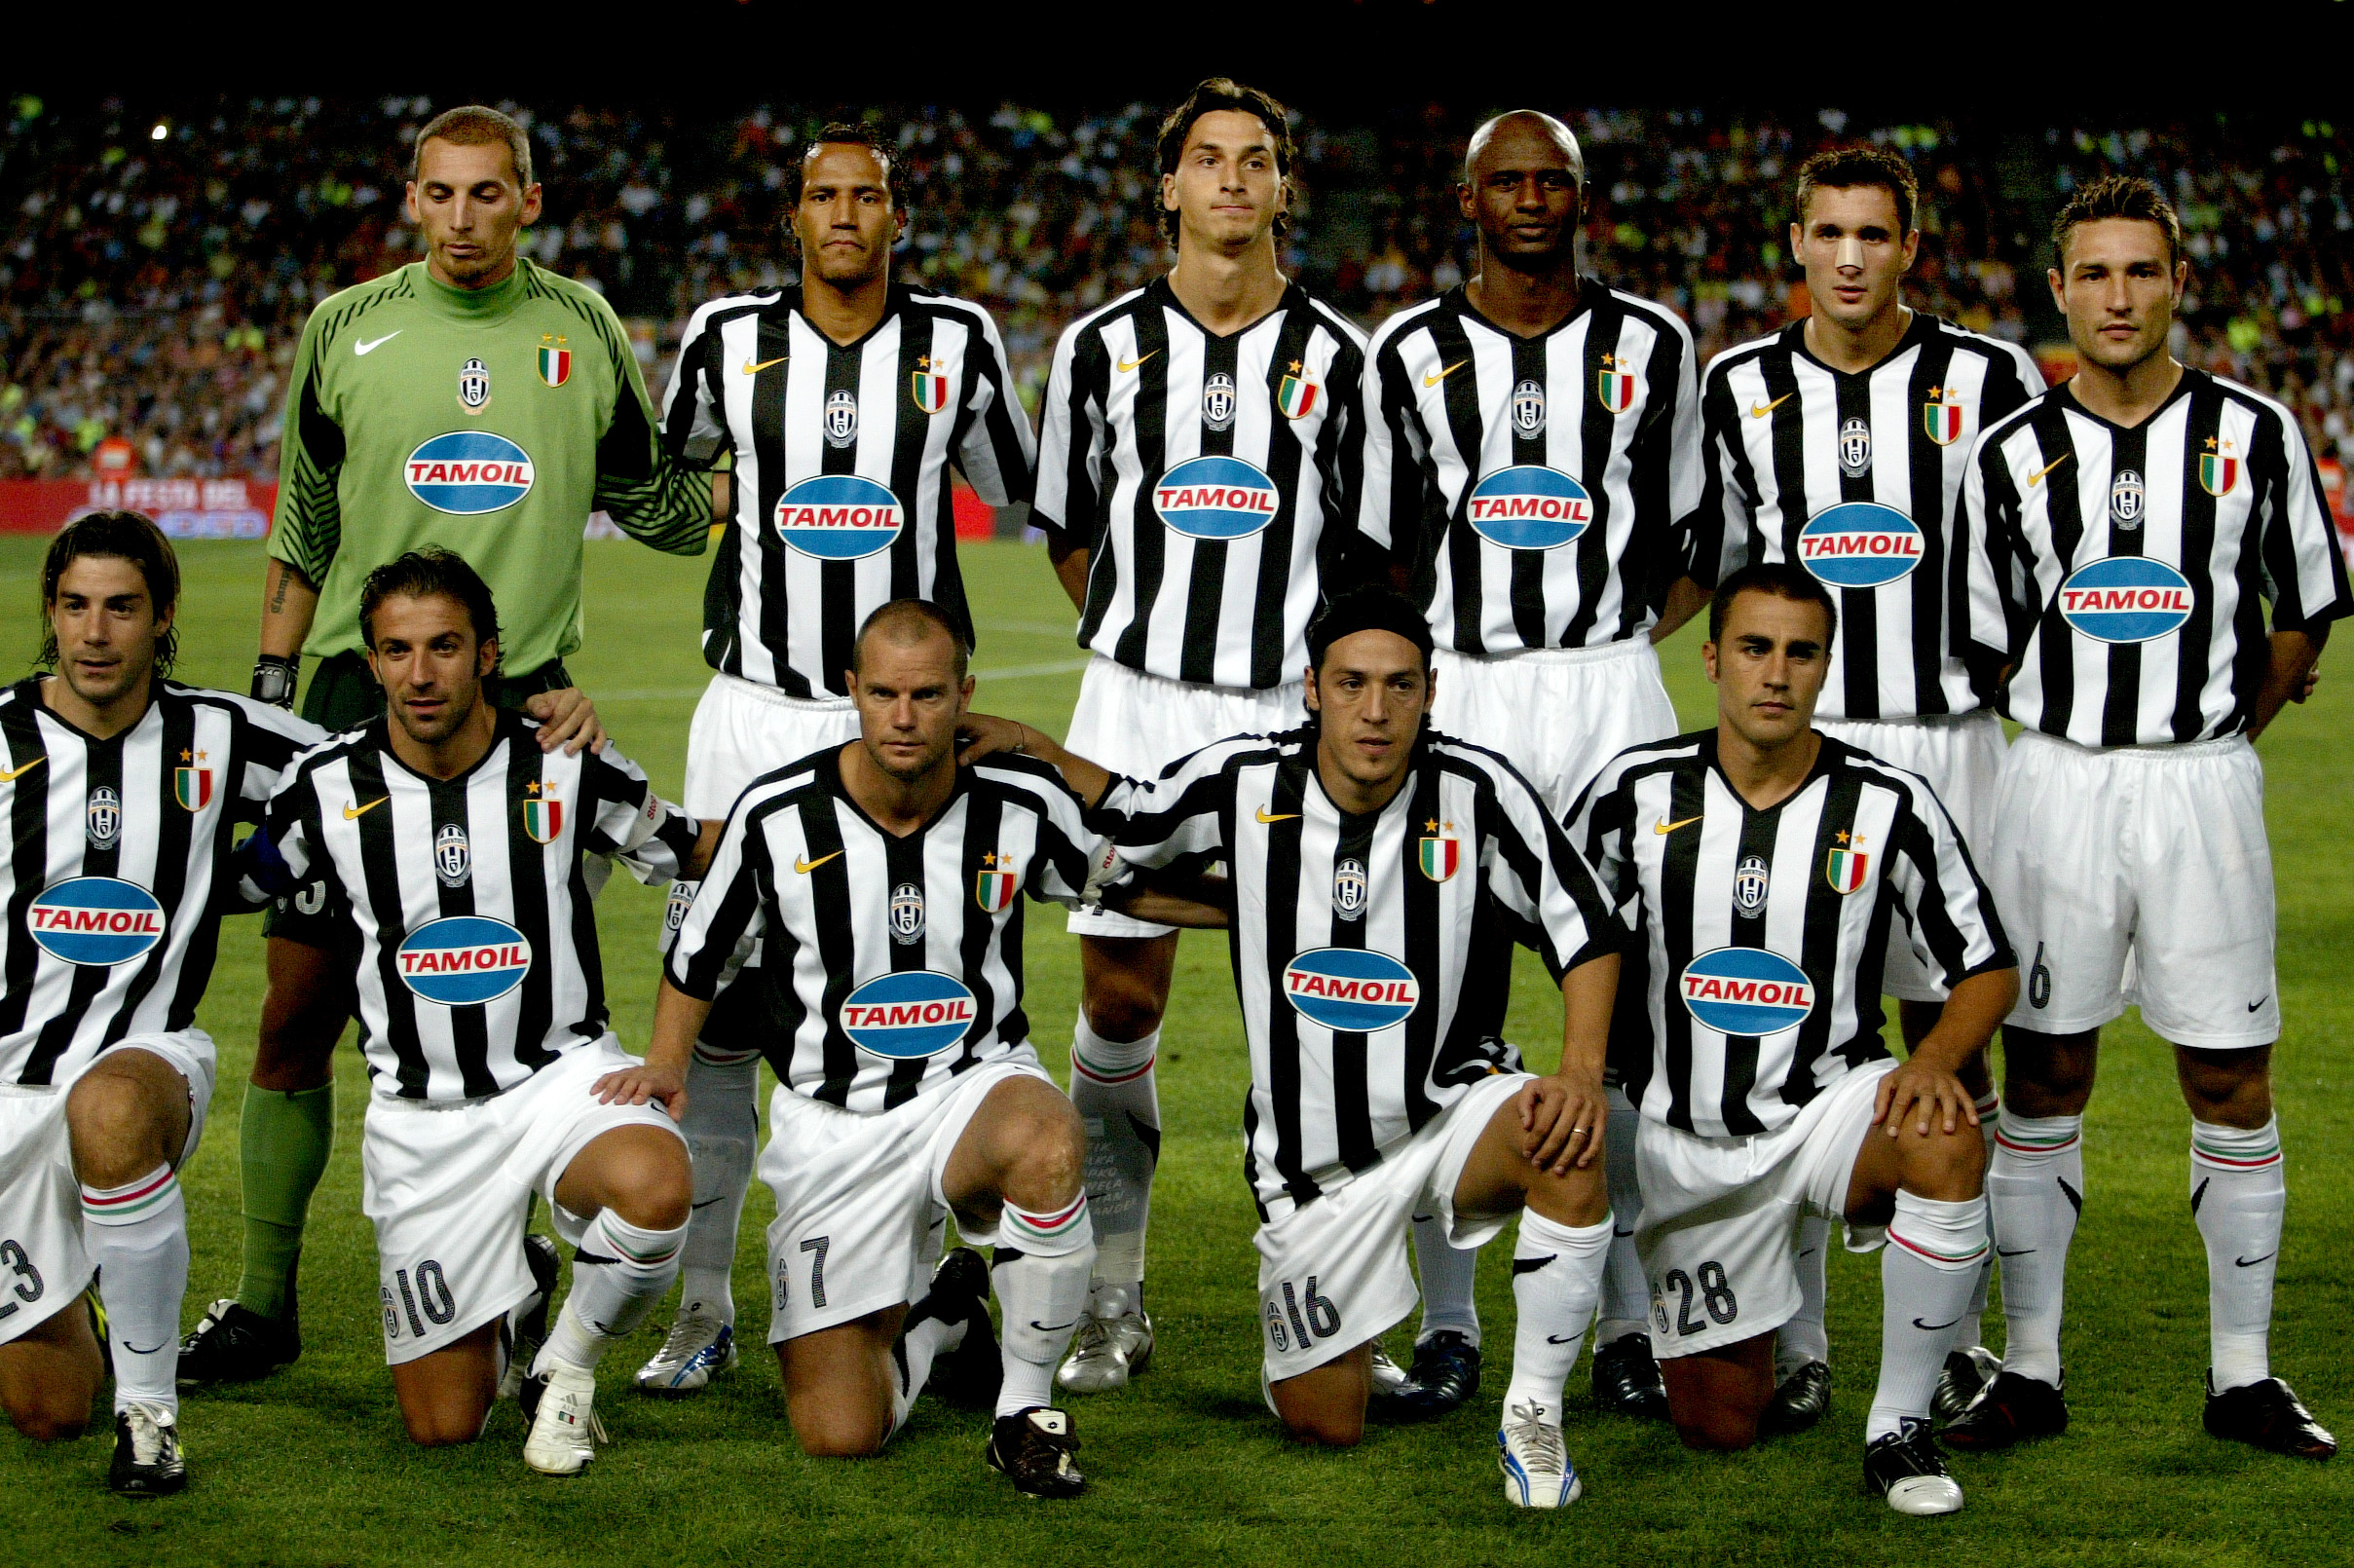 Han spelade i den här legendariska Juventus-elvan.